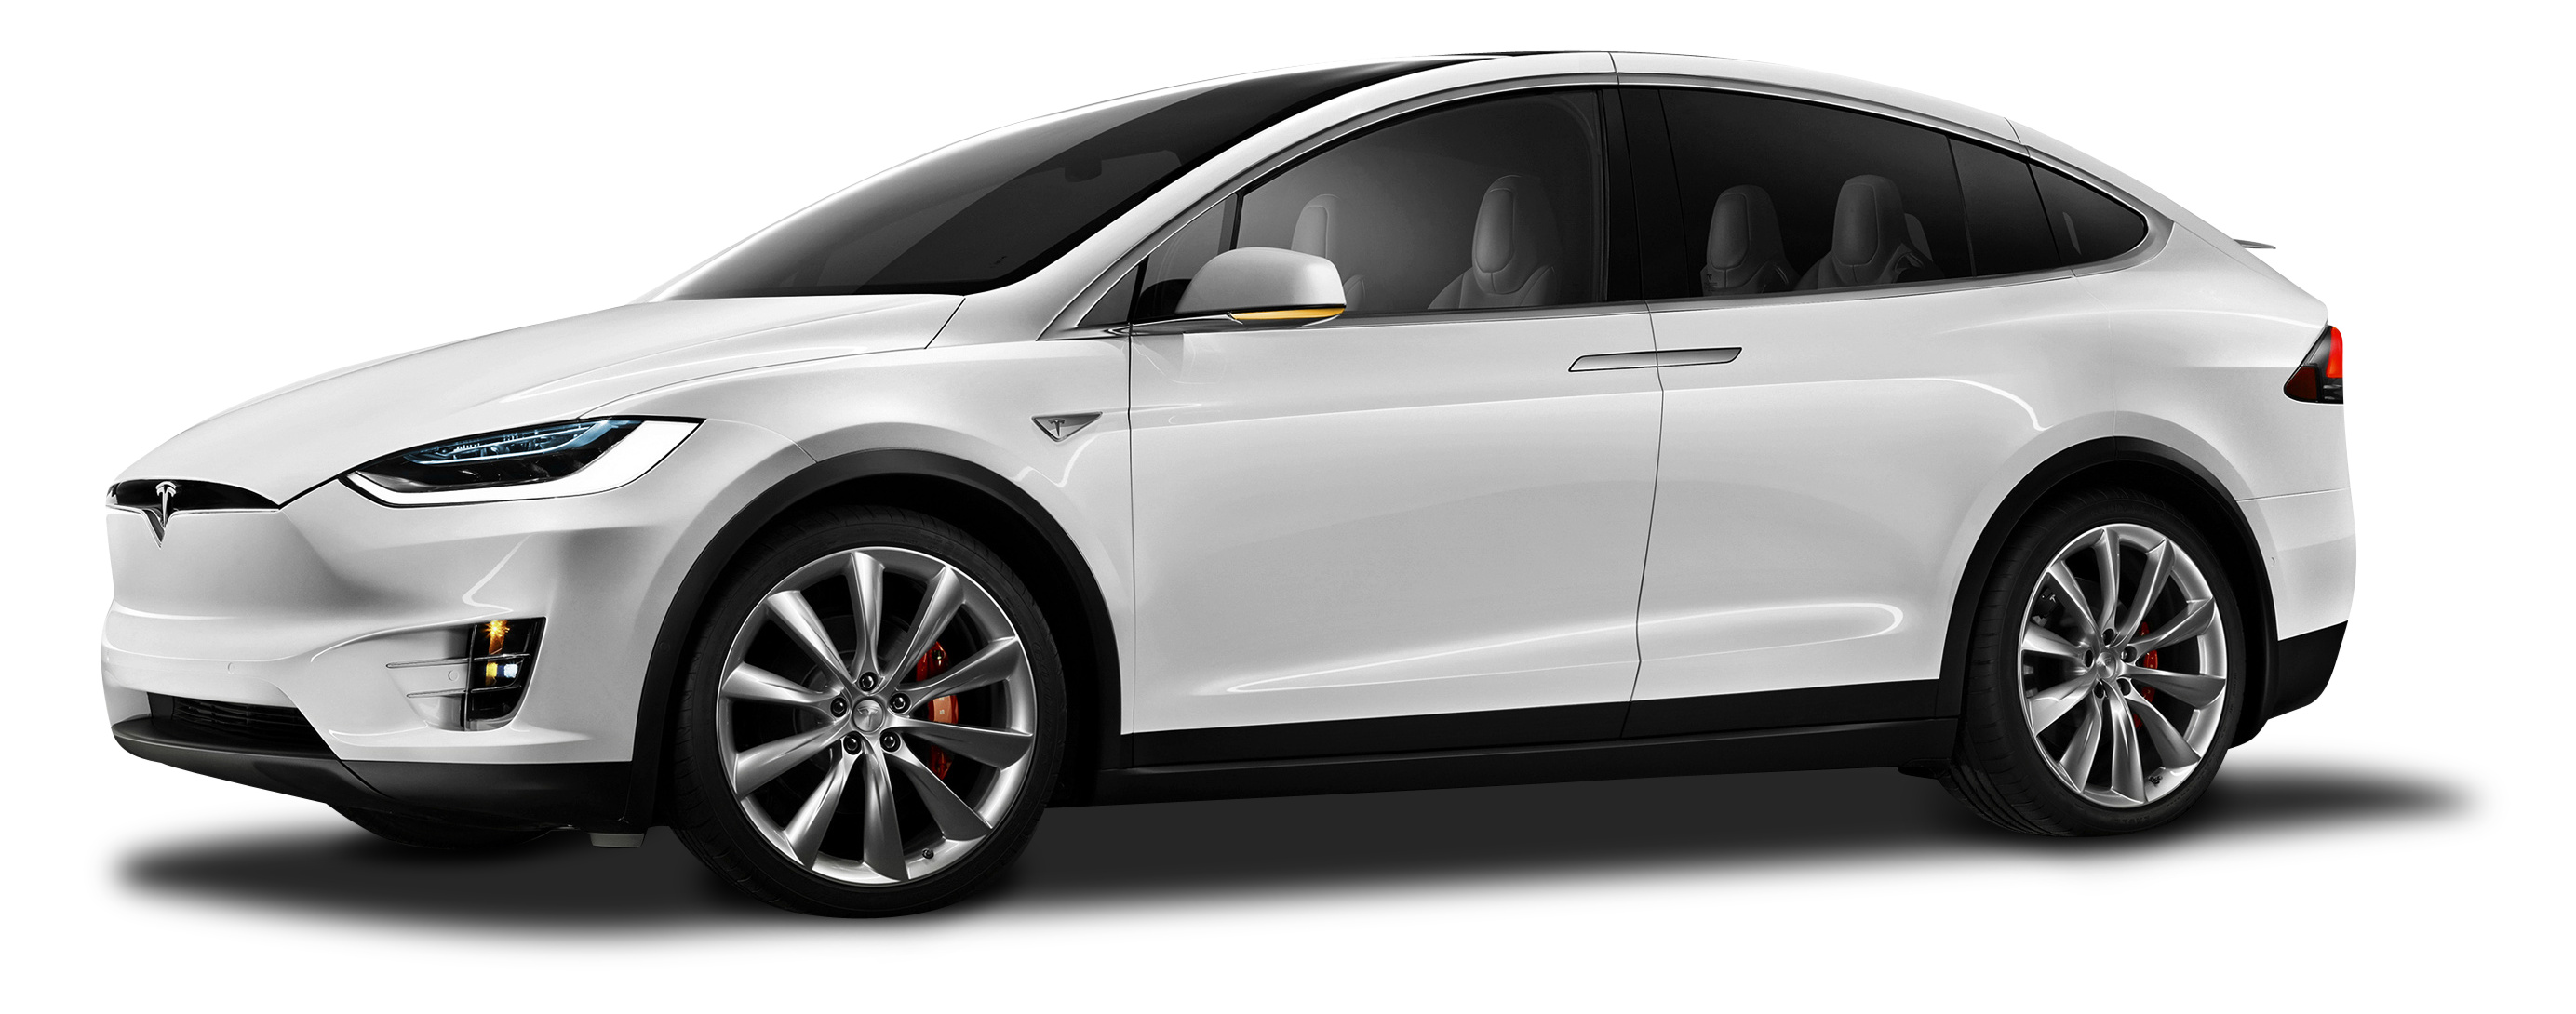 Tesla Model X, White car, Range Rover Sport, BMW X6, 2770x1090 Dual Screen Desktop